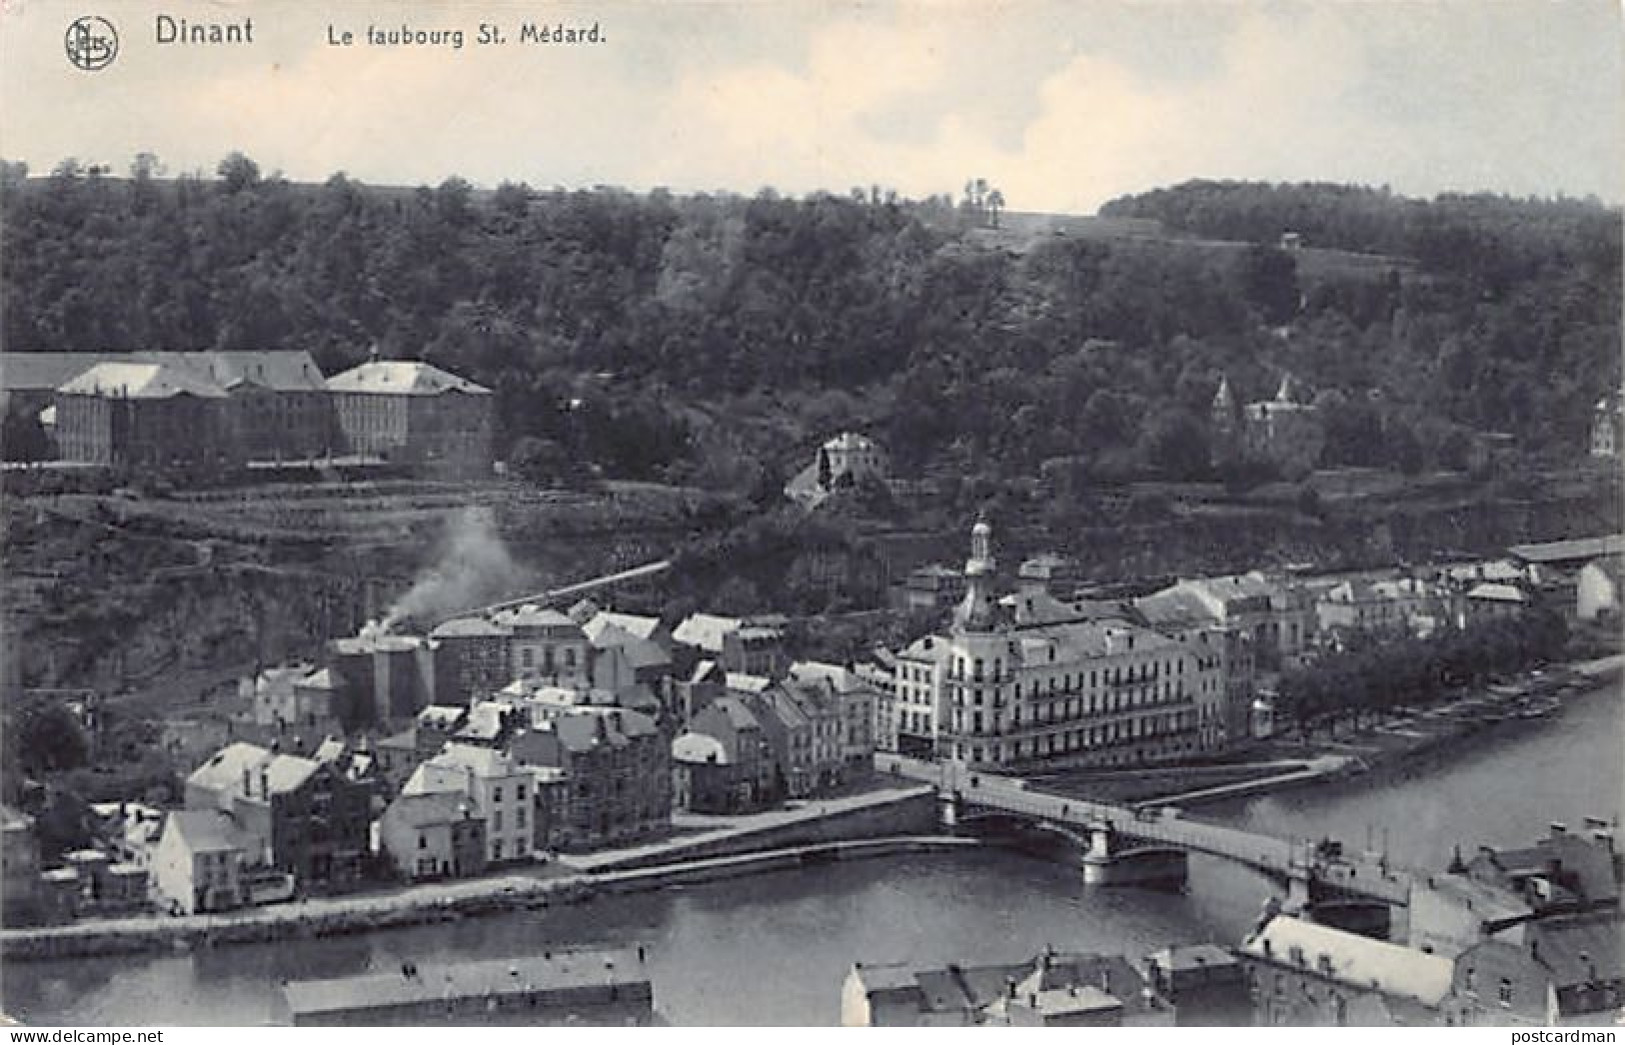 Belgique - DINANT (Namur) Le Faubourg Saint Médard - Ed. Nes Série Dinant N. 27 - Dinant